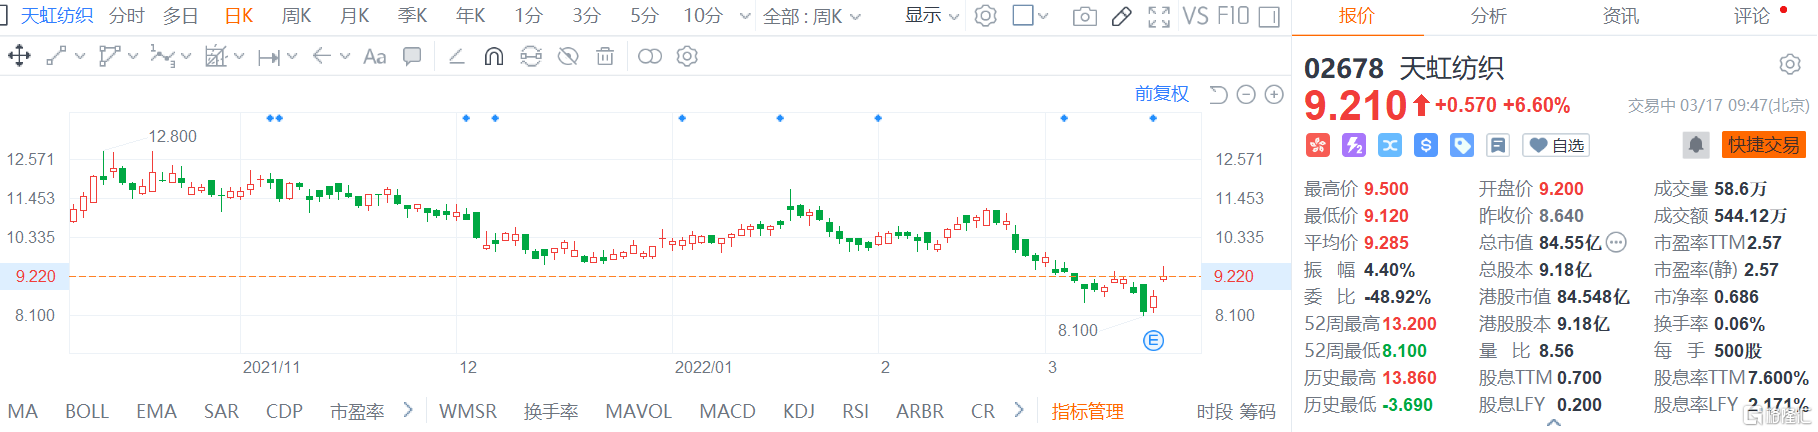 天虹纺织(2678.HK)股价高位震荡 盘中最大涨幅逾9%